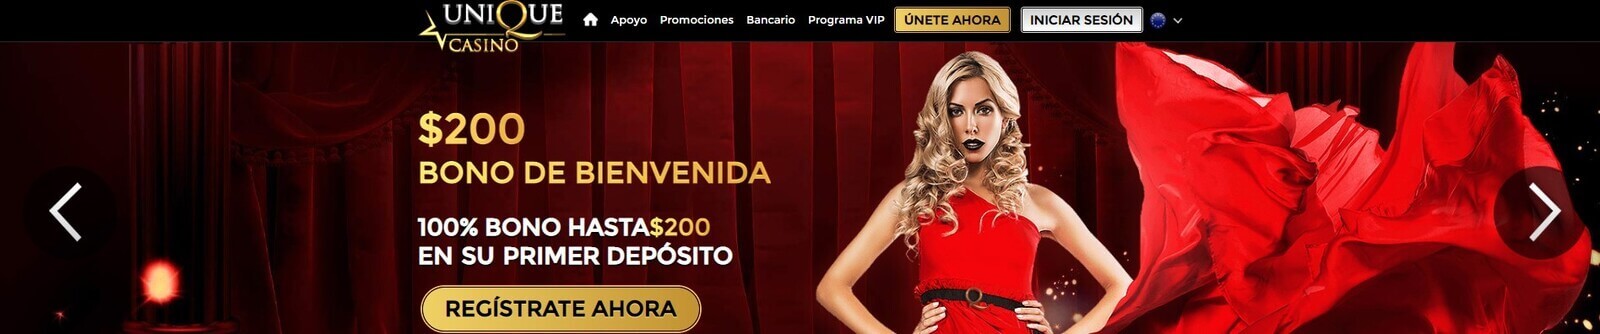 Página web de Unique Casino online en Panamá